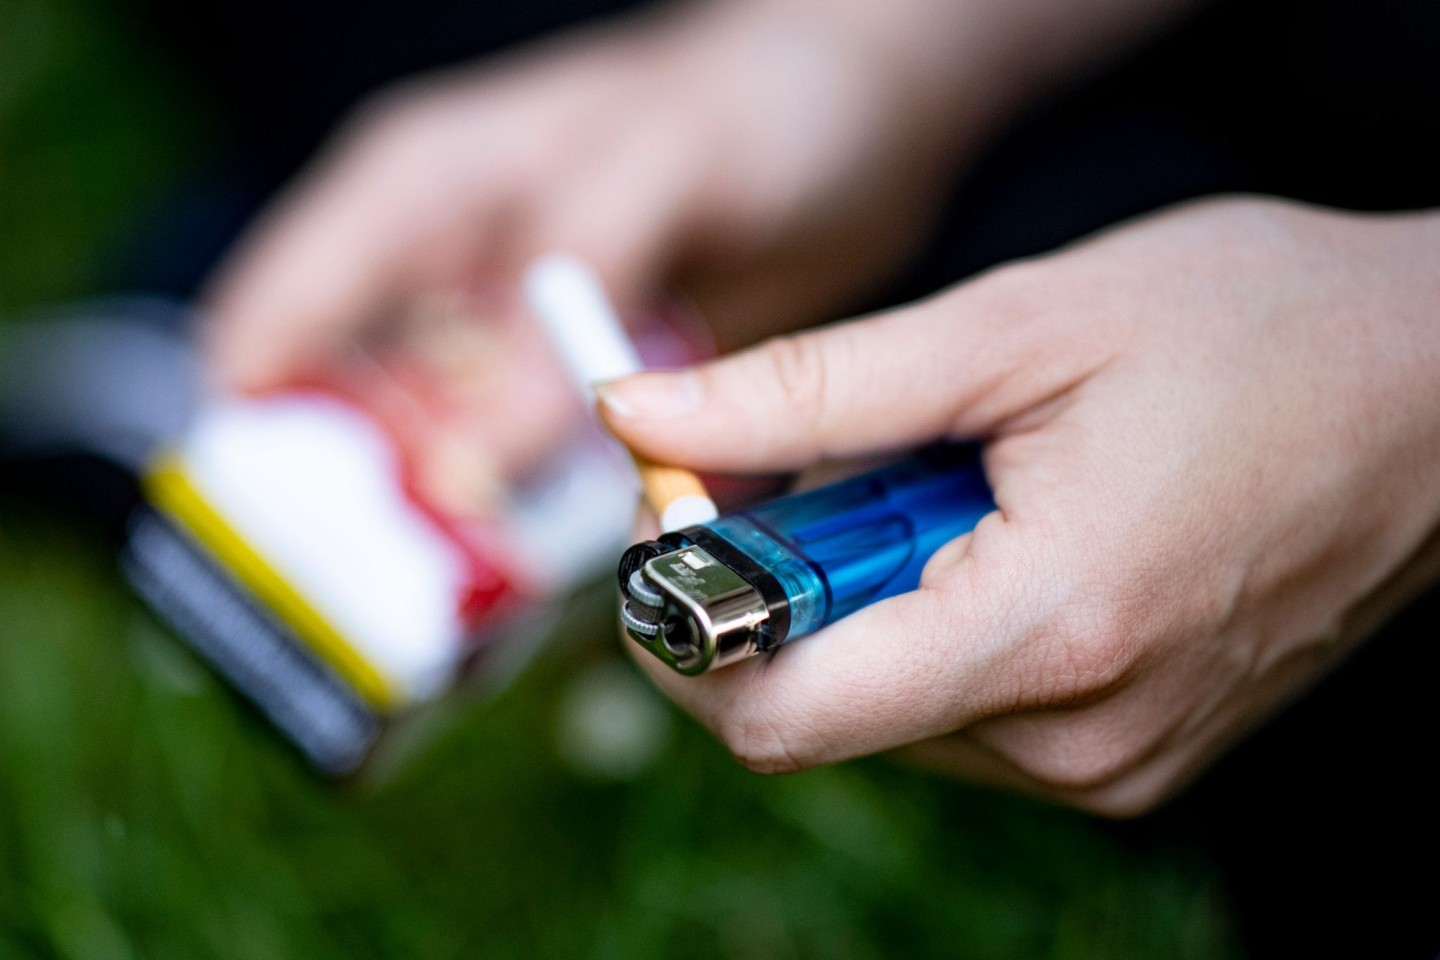 Gesundheitsrisiko Rauchen: Die WHO appelliert im Zusammenhang mit Todesfällen durch nicht übertragbare Krankheiten wie Krebs, auf Tabak zu verzichten.